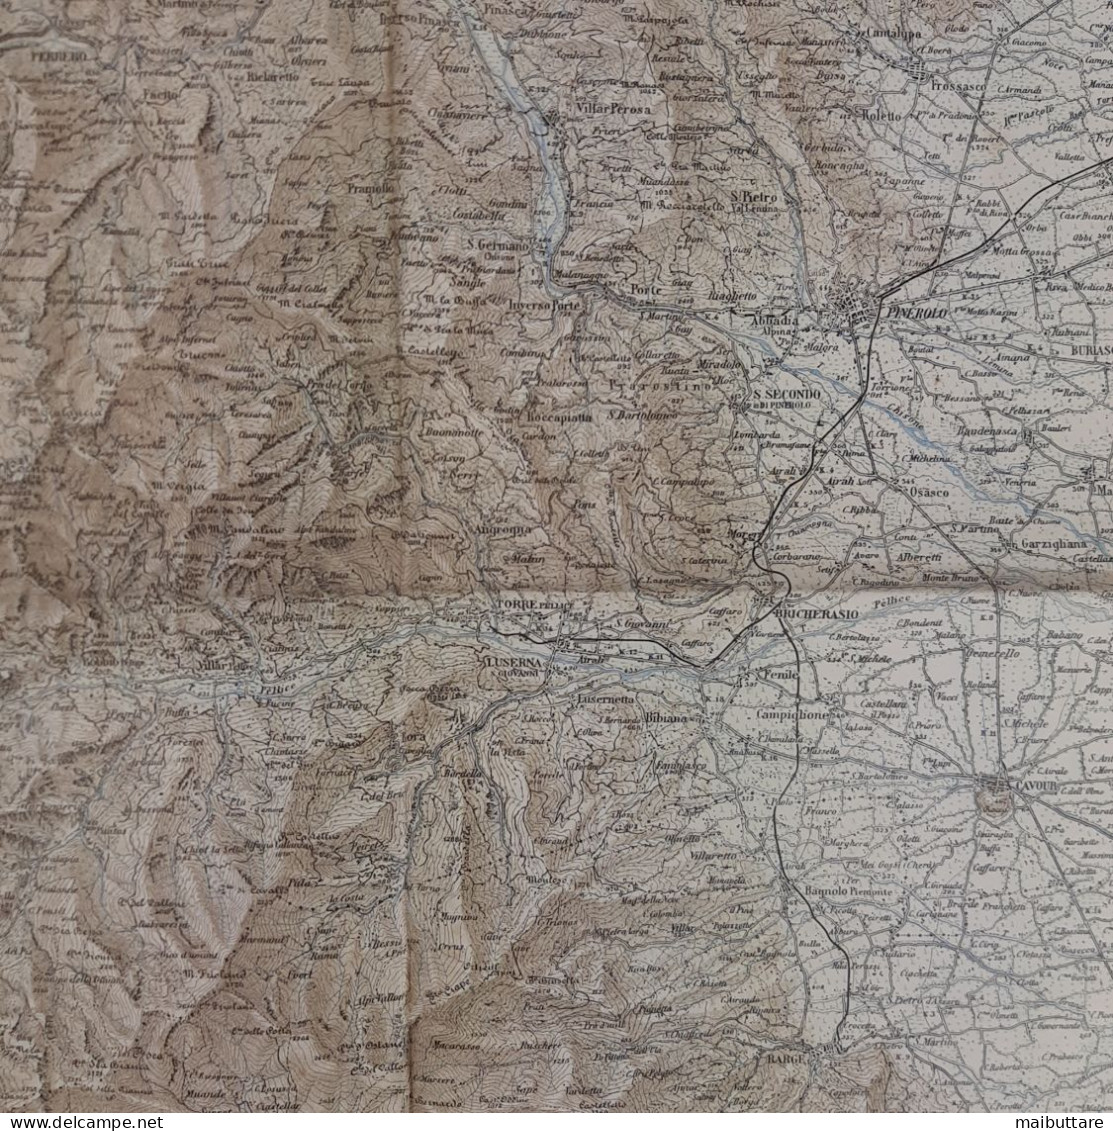 Carta Geografica, Cartina Mappa Militare Pinerolo Torino Piemonte F67 Della Carta D'Italia Scala 1:100.000 - Carte Geographique